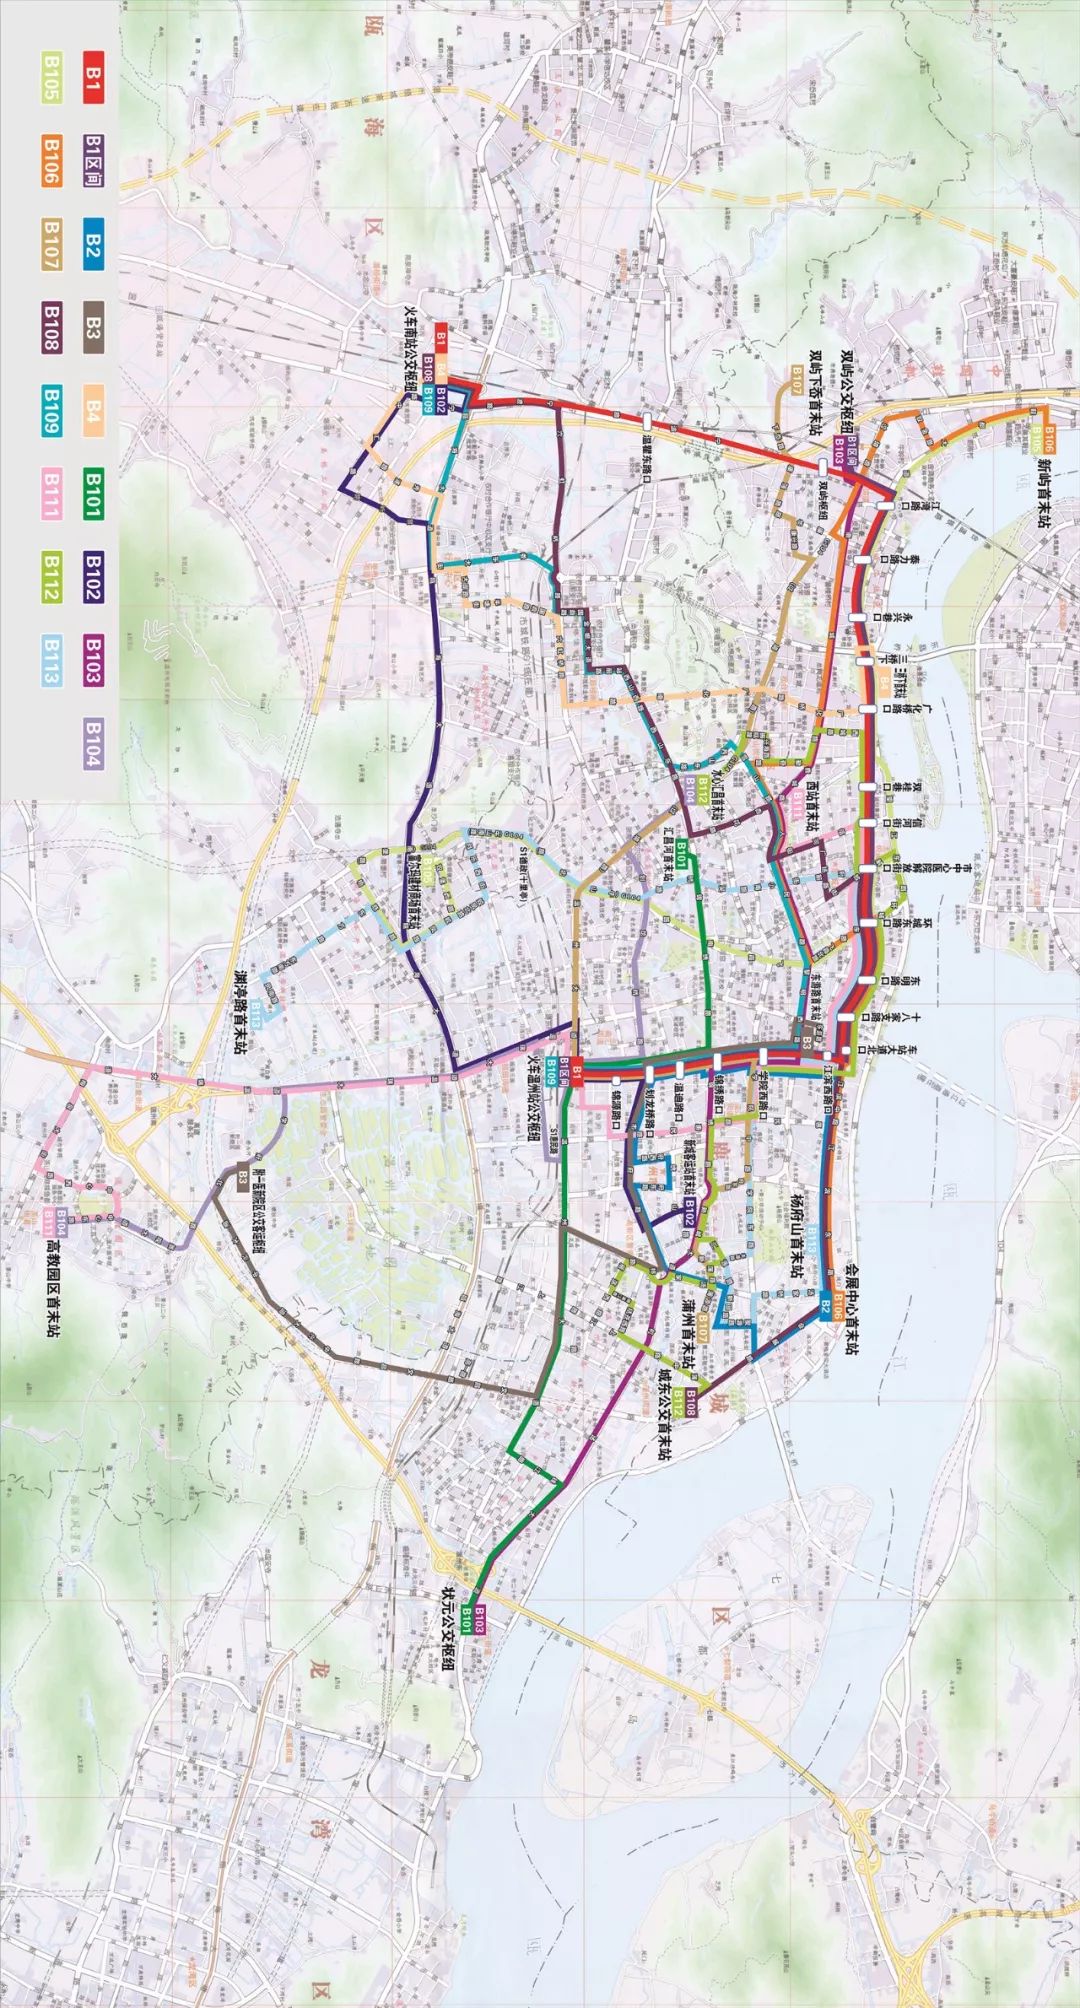 温州brt线路规划图图片